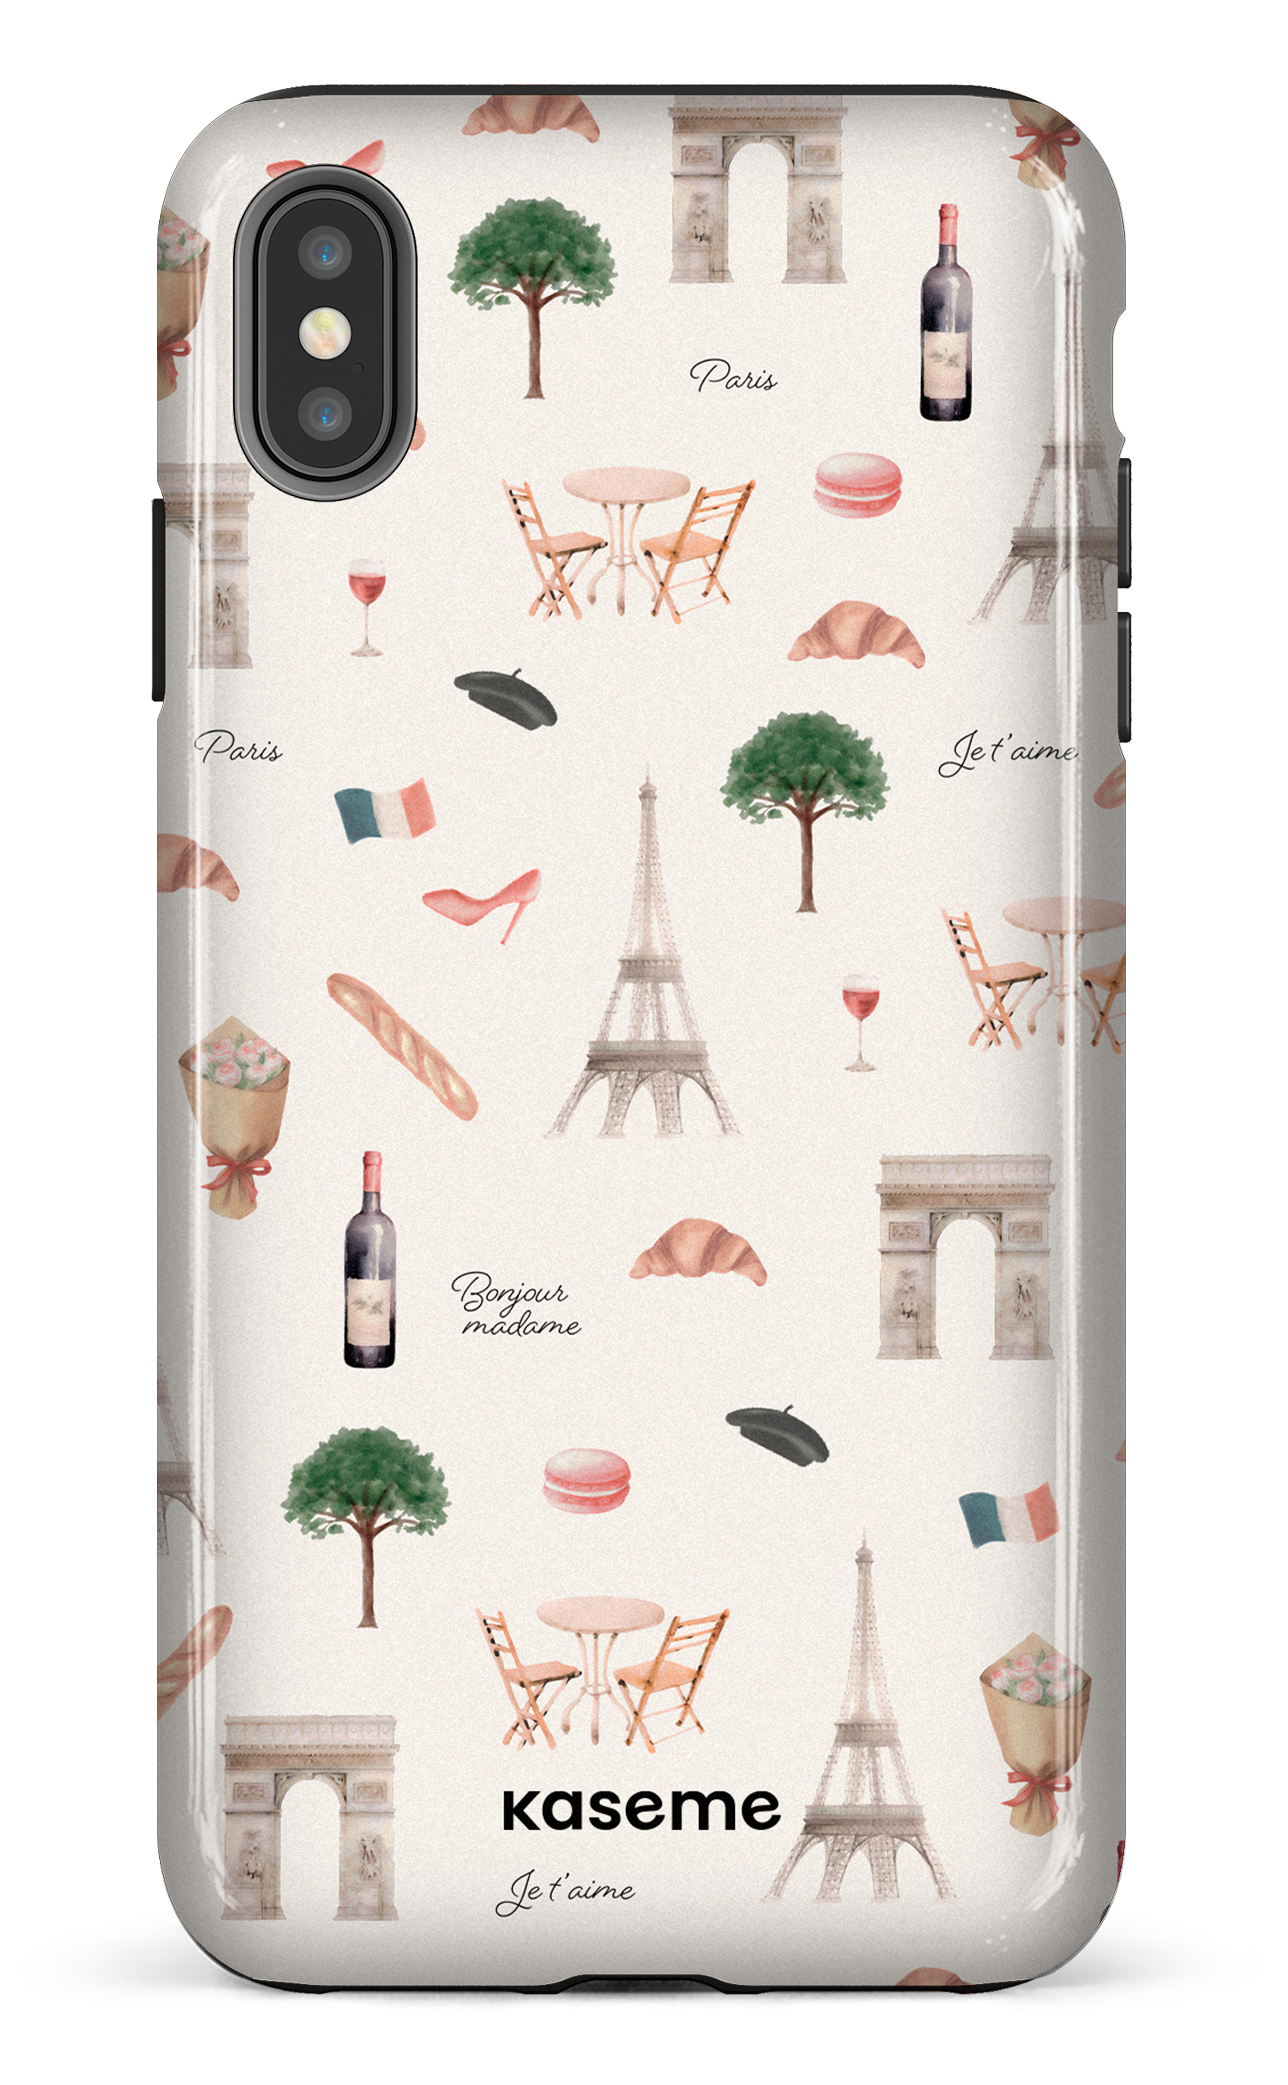 Je t'aime Paris - iPhone XS Max